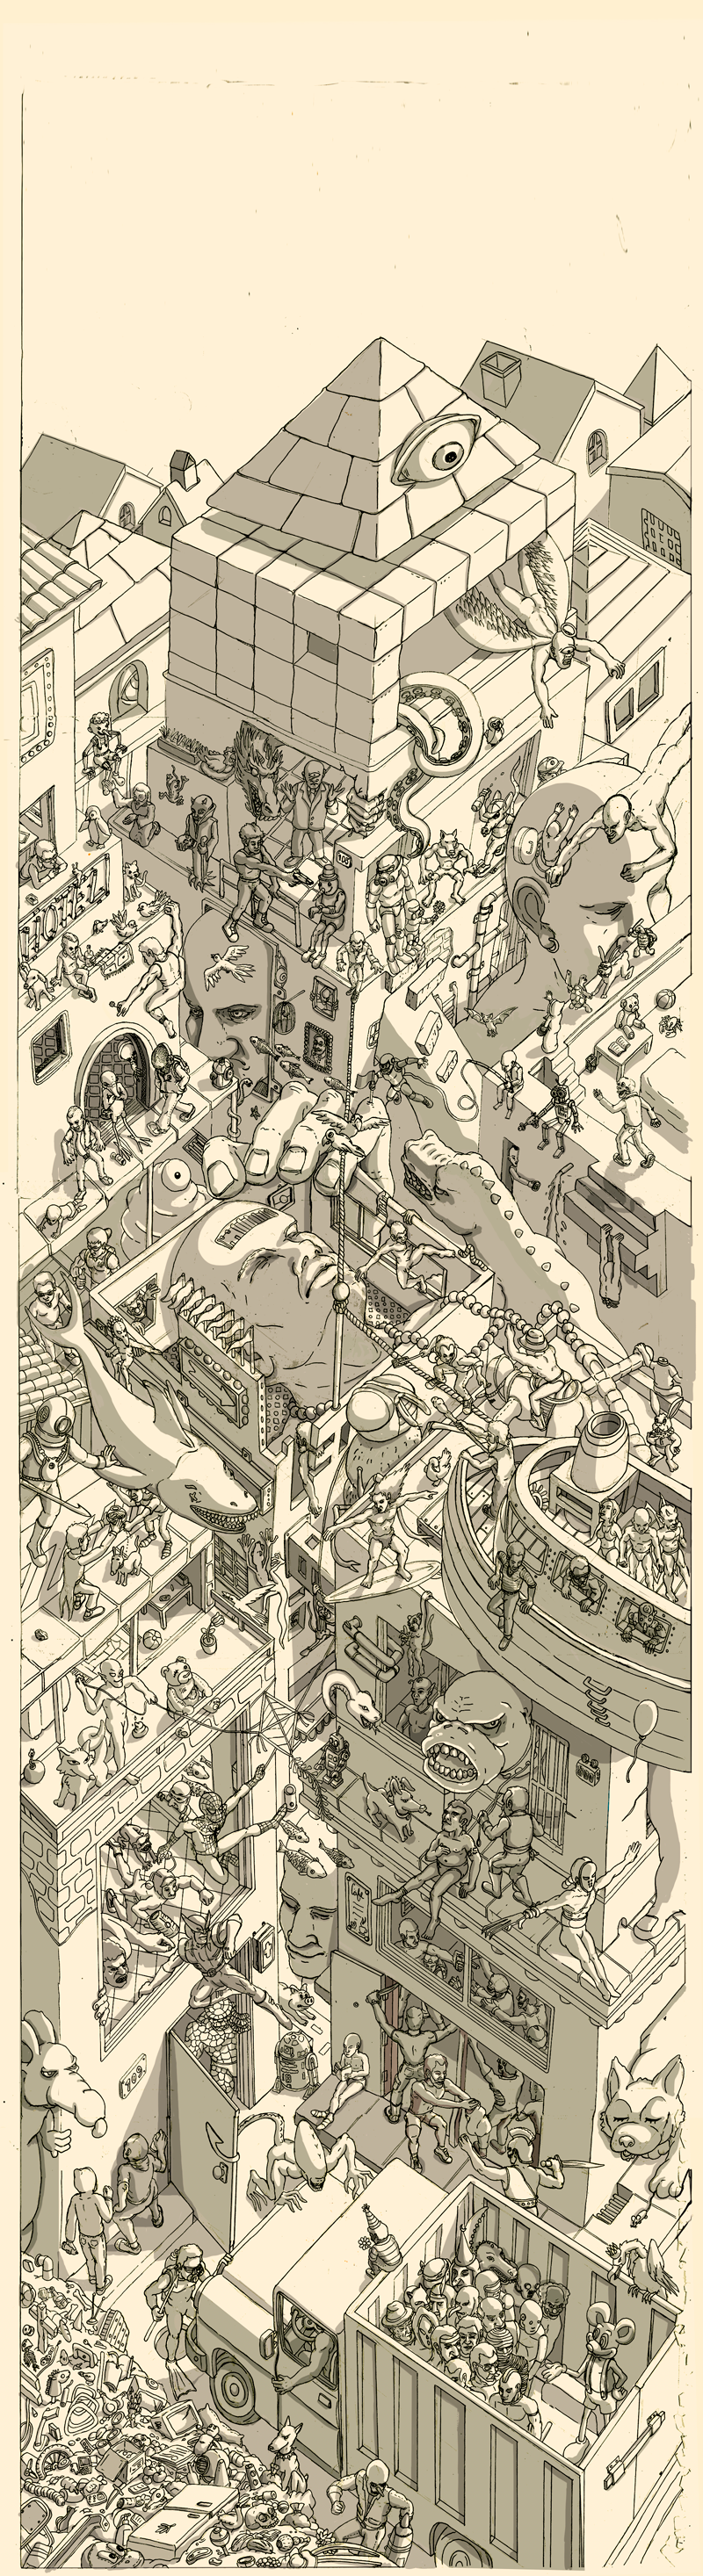 draw city doodle cuadro peru lima ciudad poster afiche crazy subrrealismo dreams fantasy onirico sueño